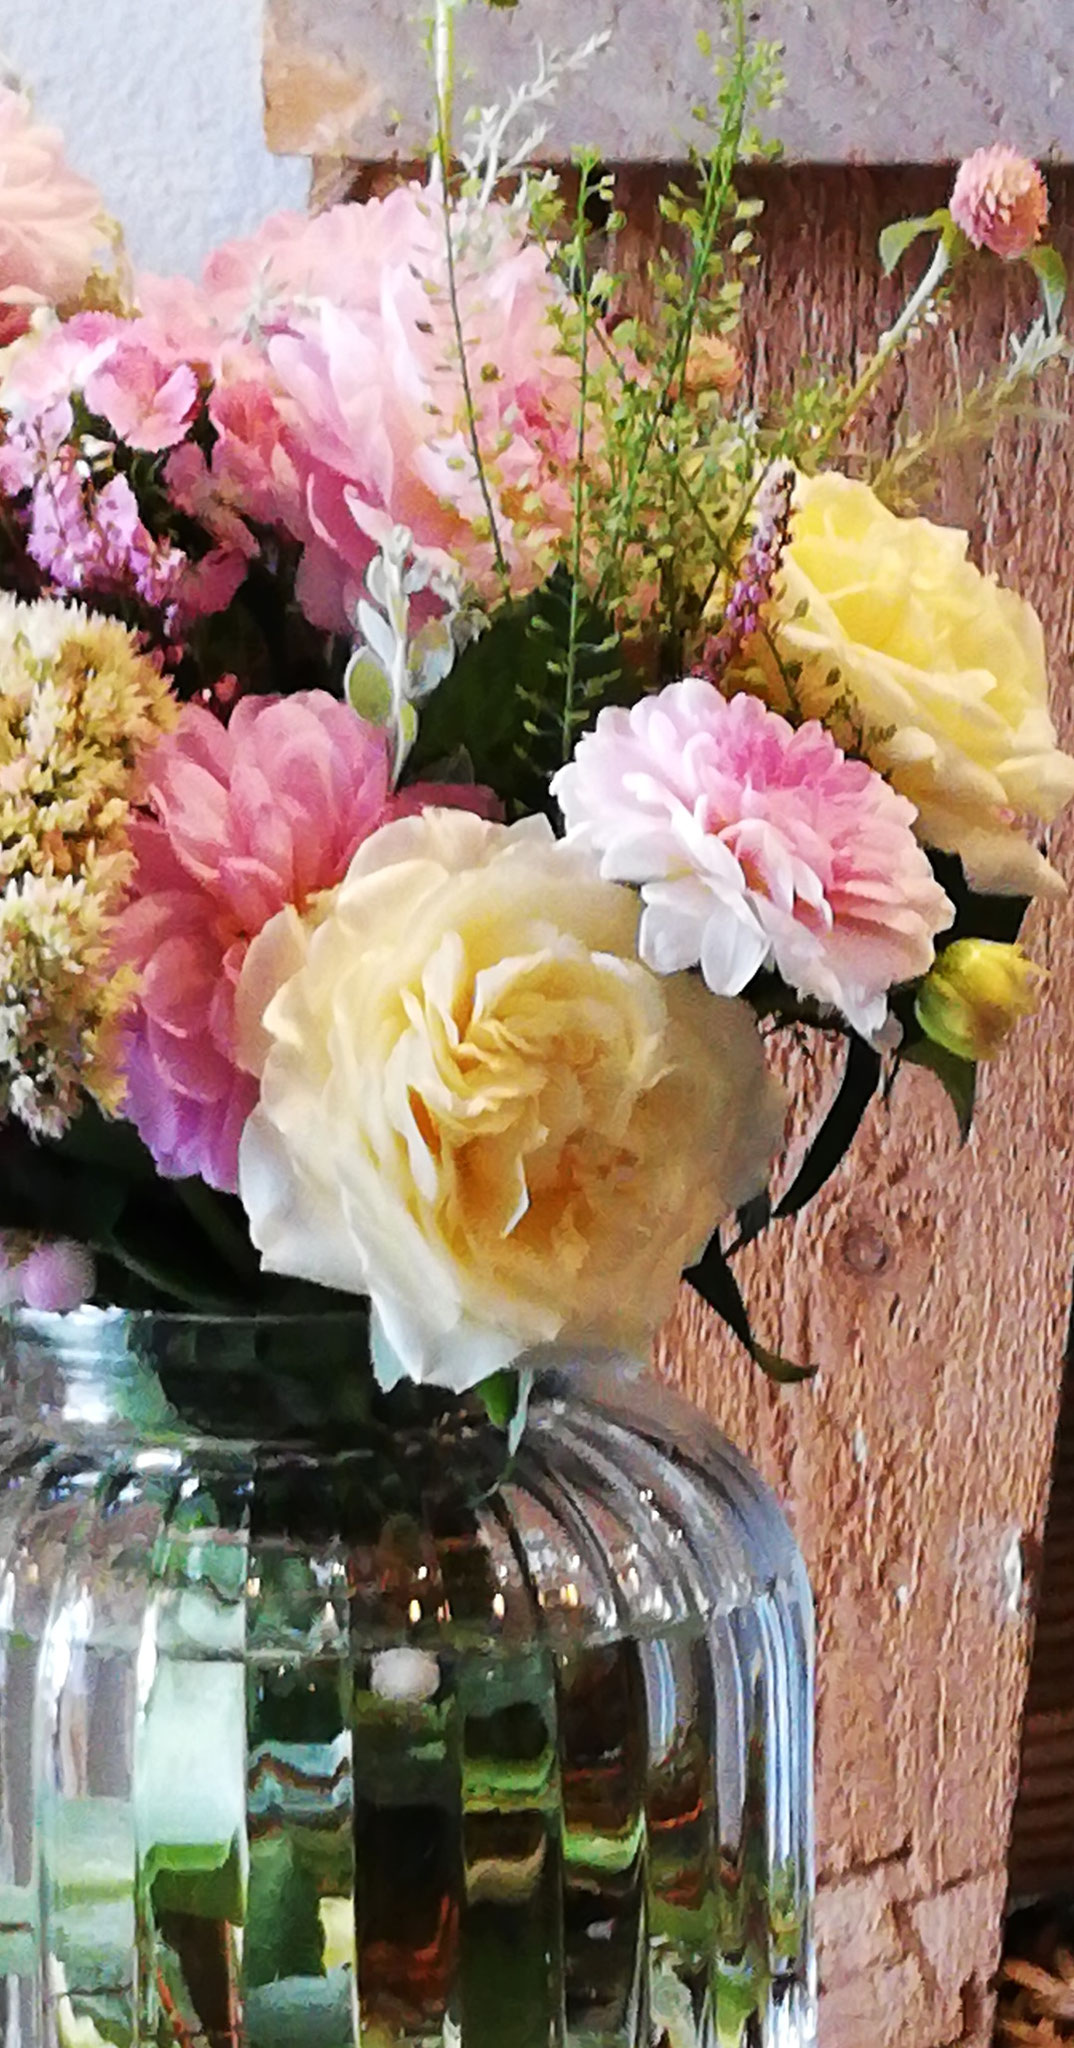 Les roses anglaises dans leur vase (bouquet 40€, vase 9€) 